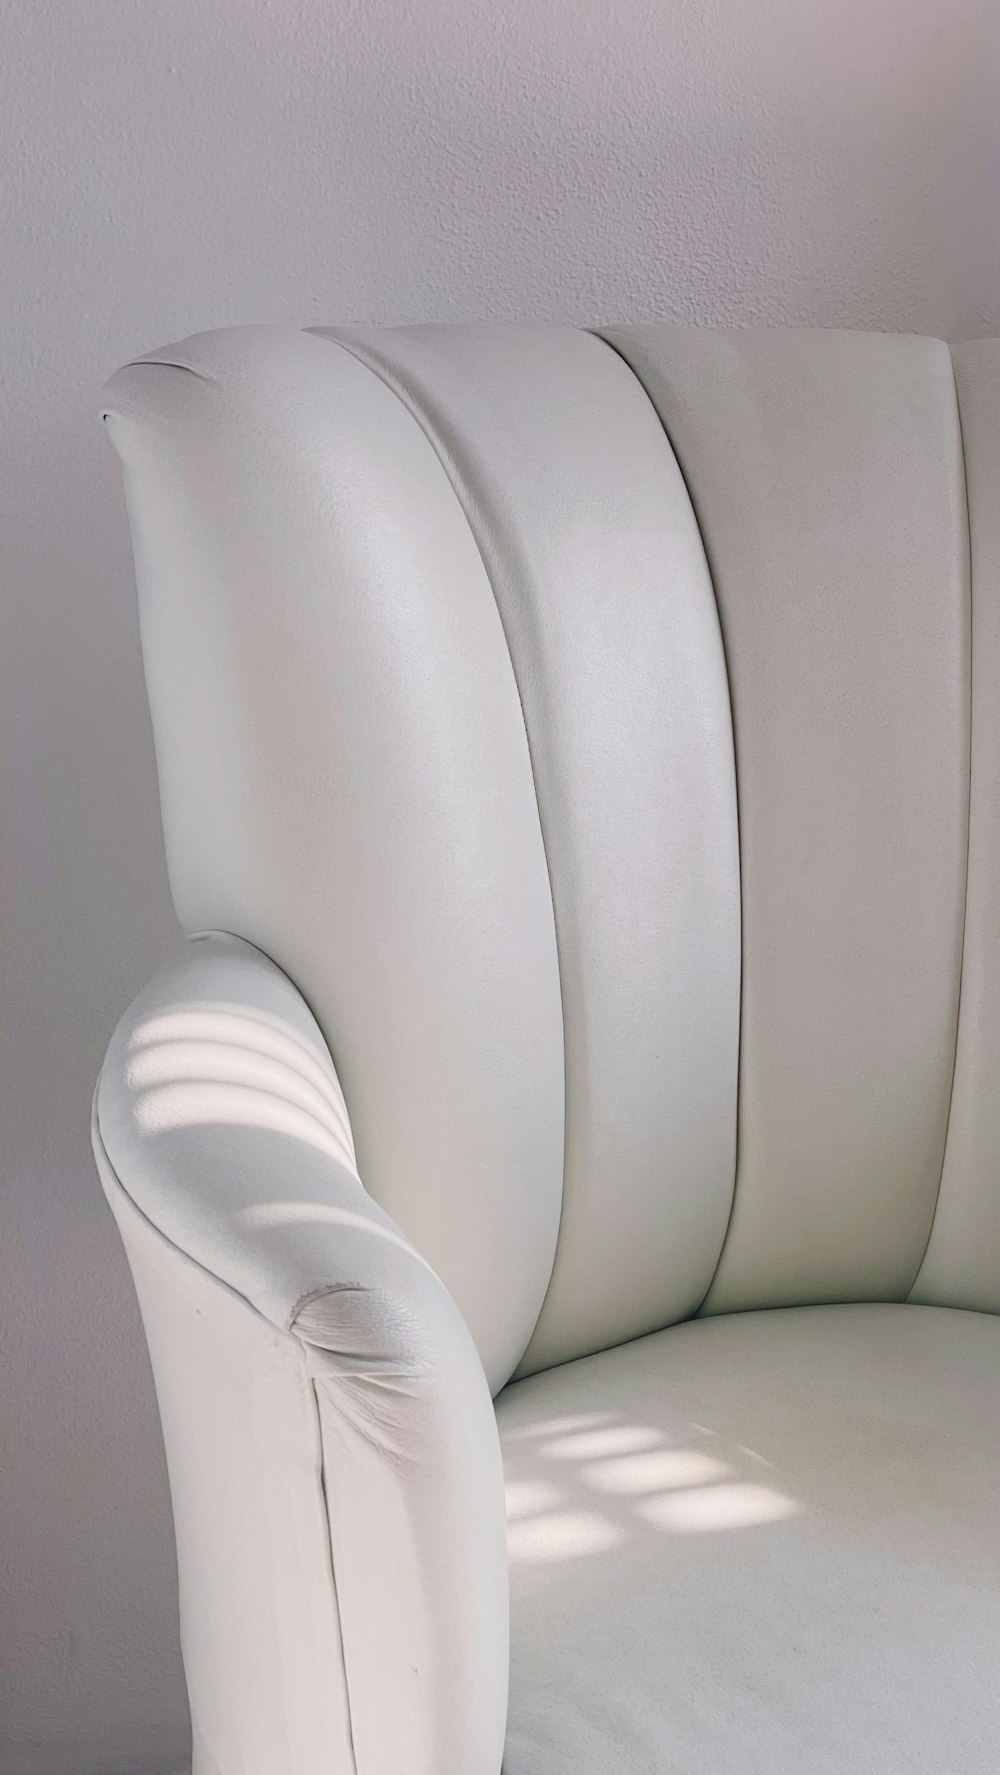 a white chair with a cushion